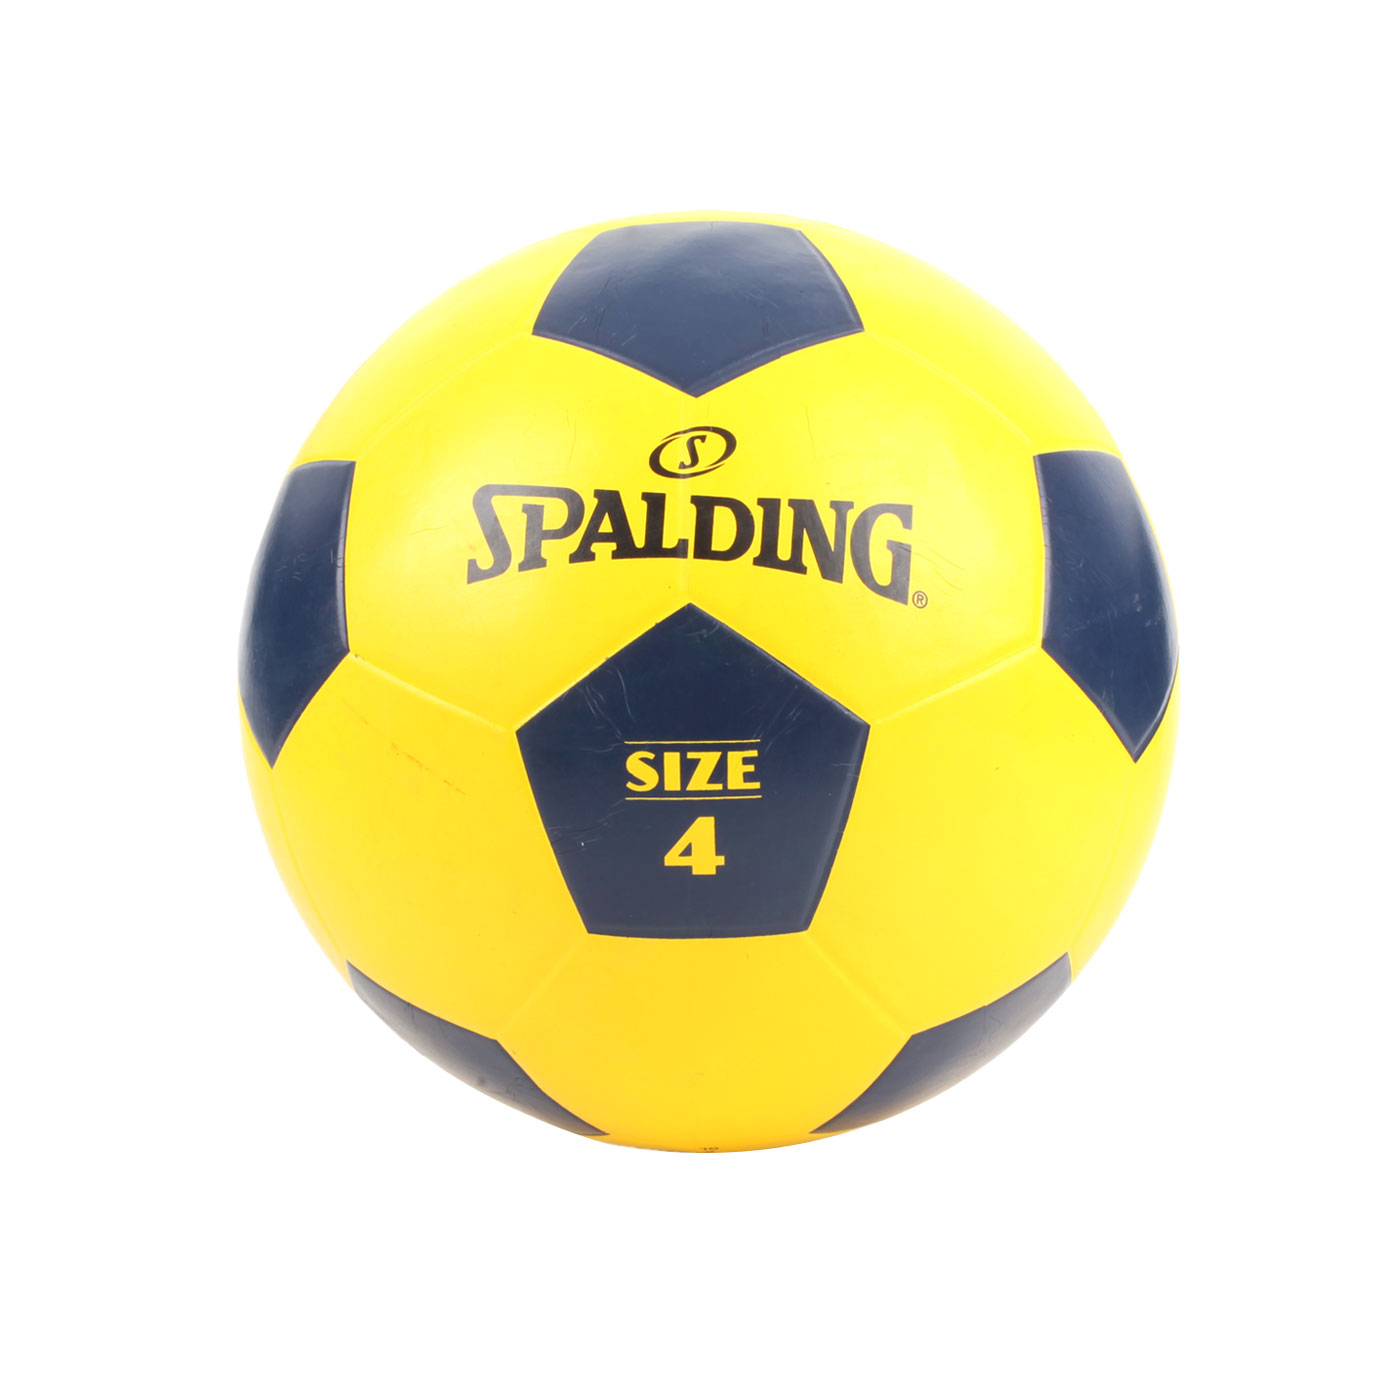 SPALDING Team 足球 #4 SPBC4001 - 黃丈青